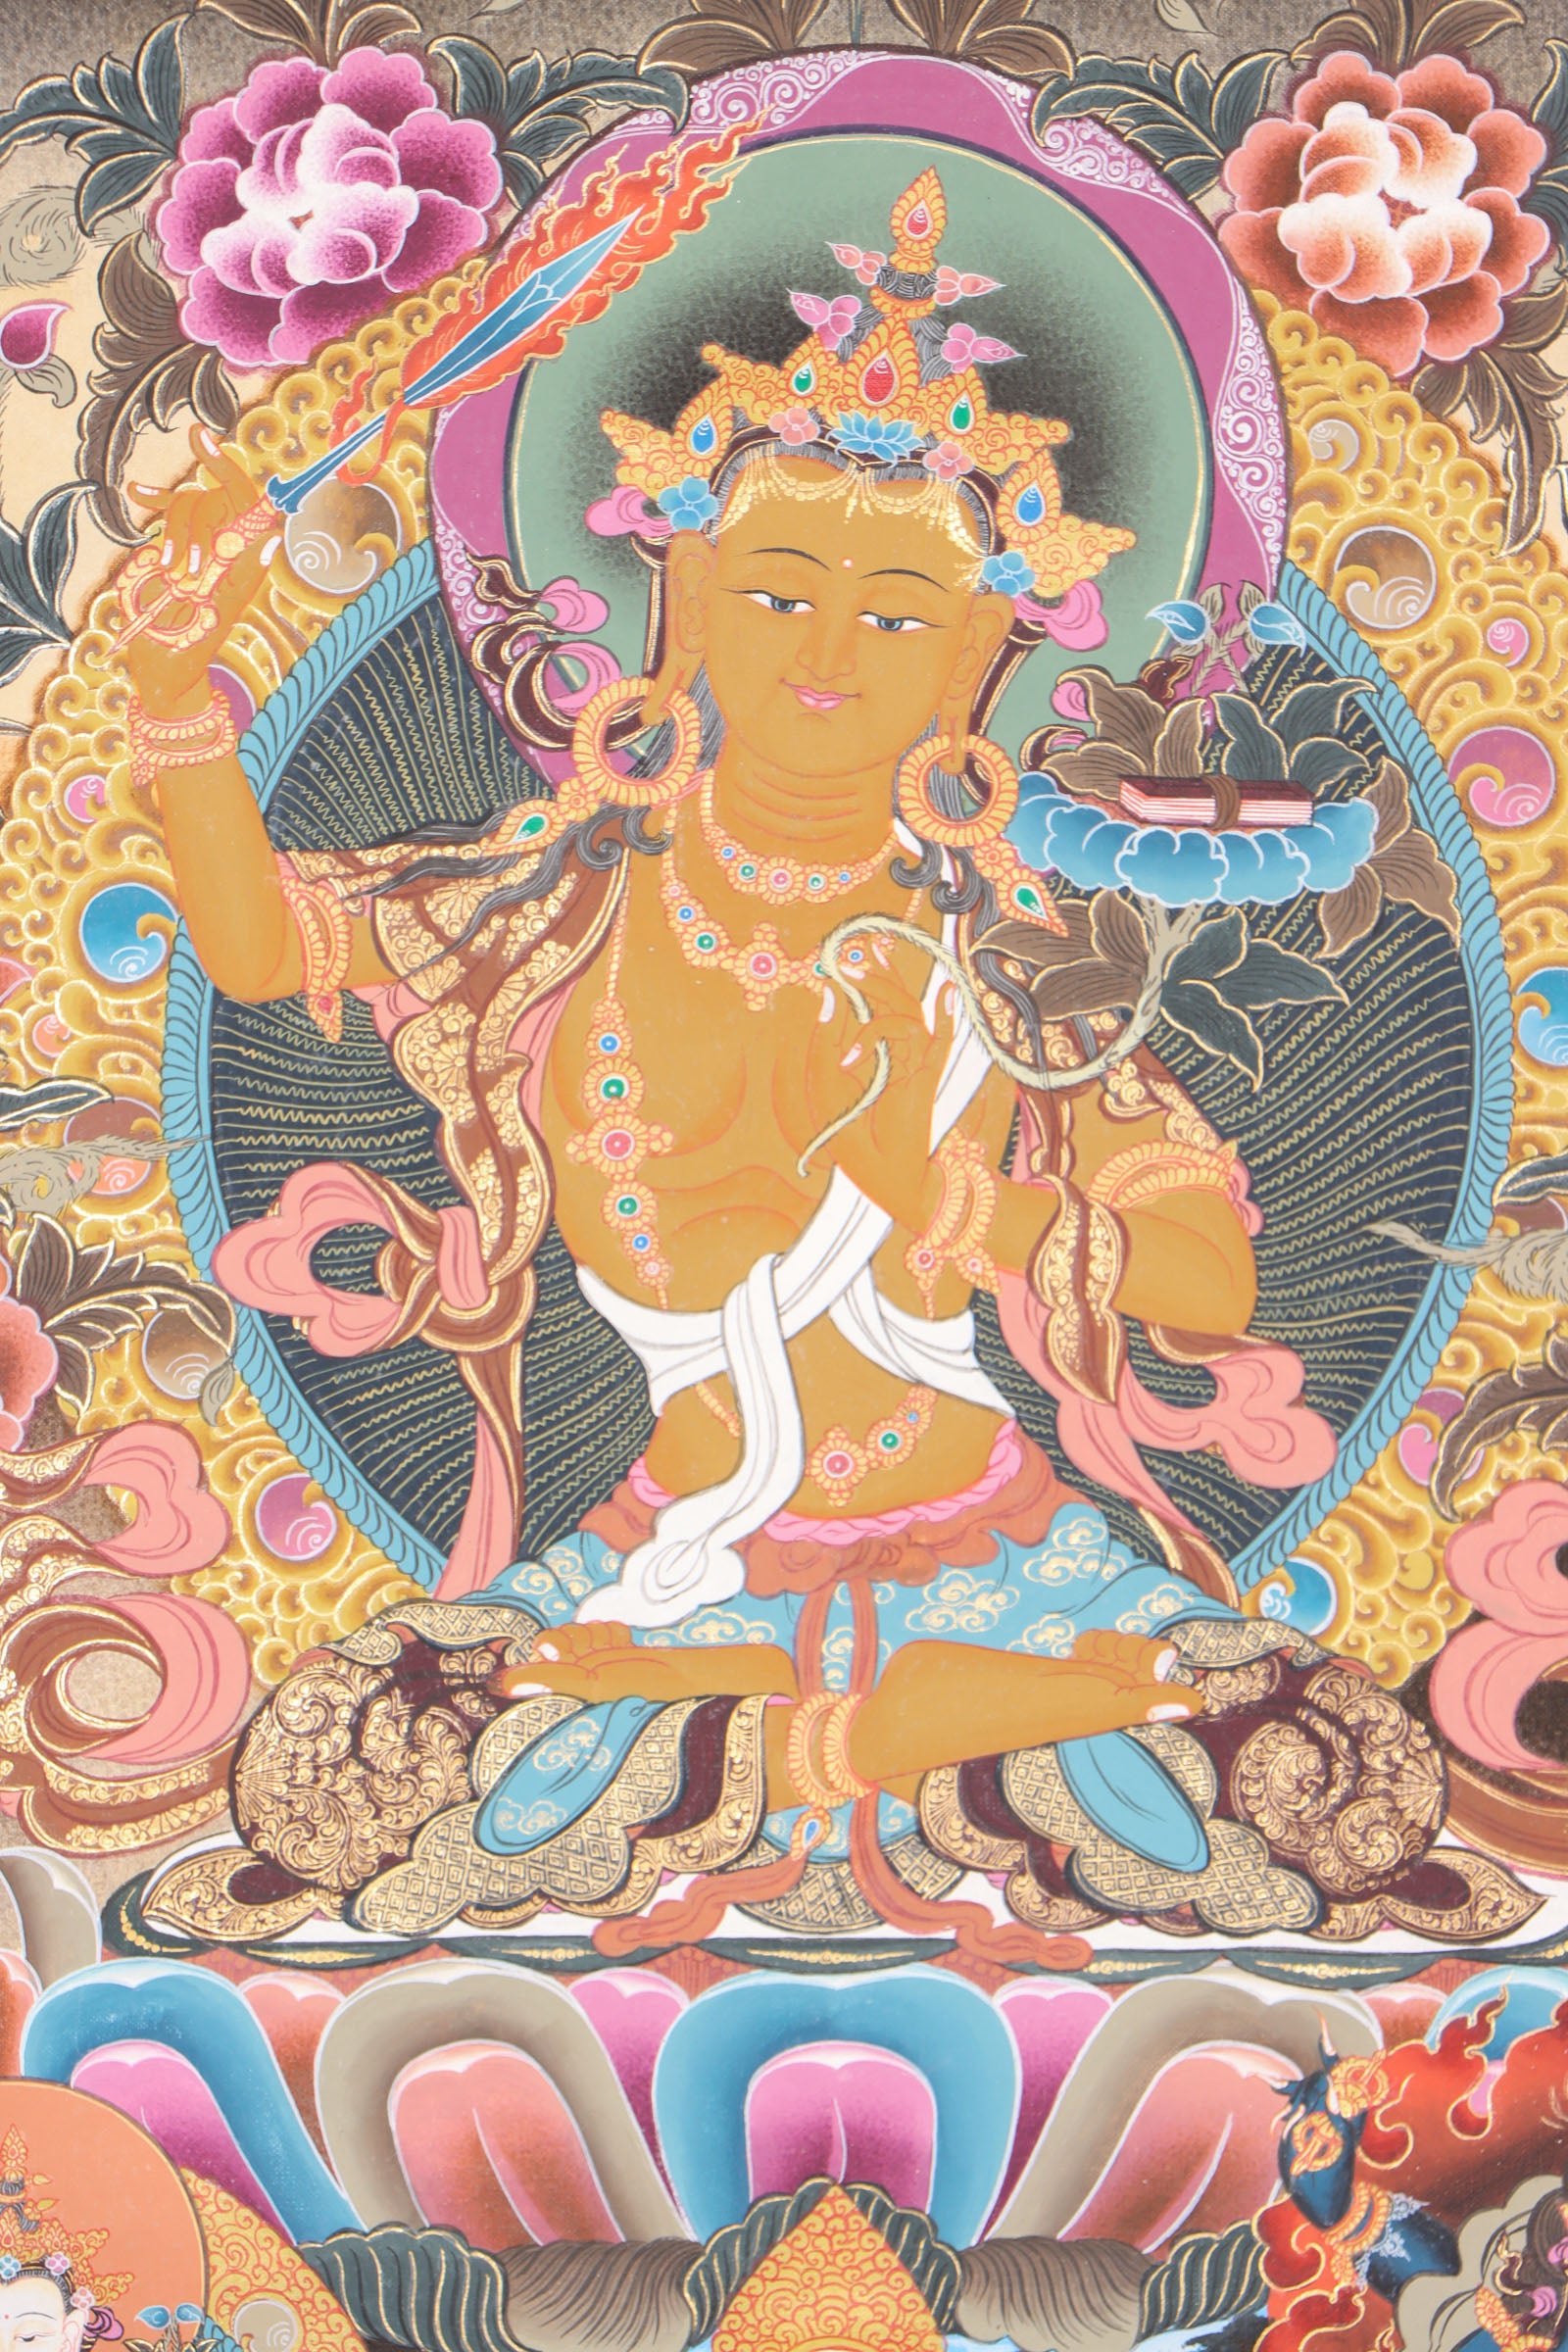 Manjushri Thangka for compassion and enlightment.